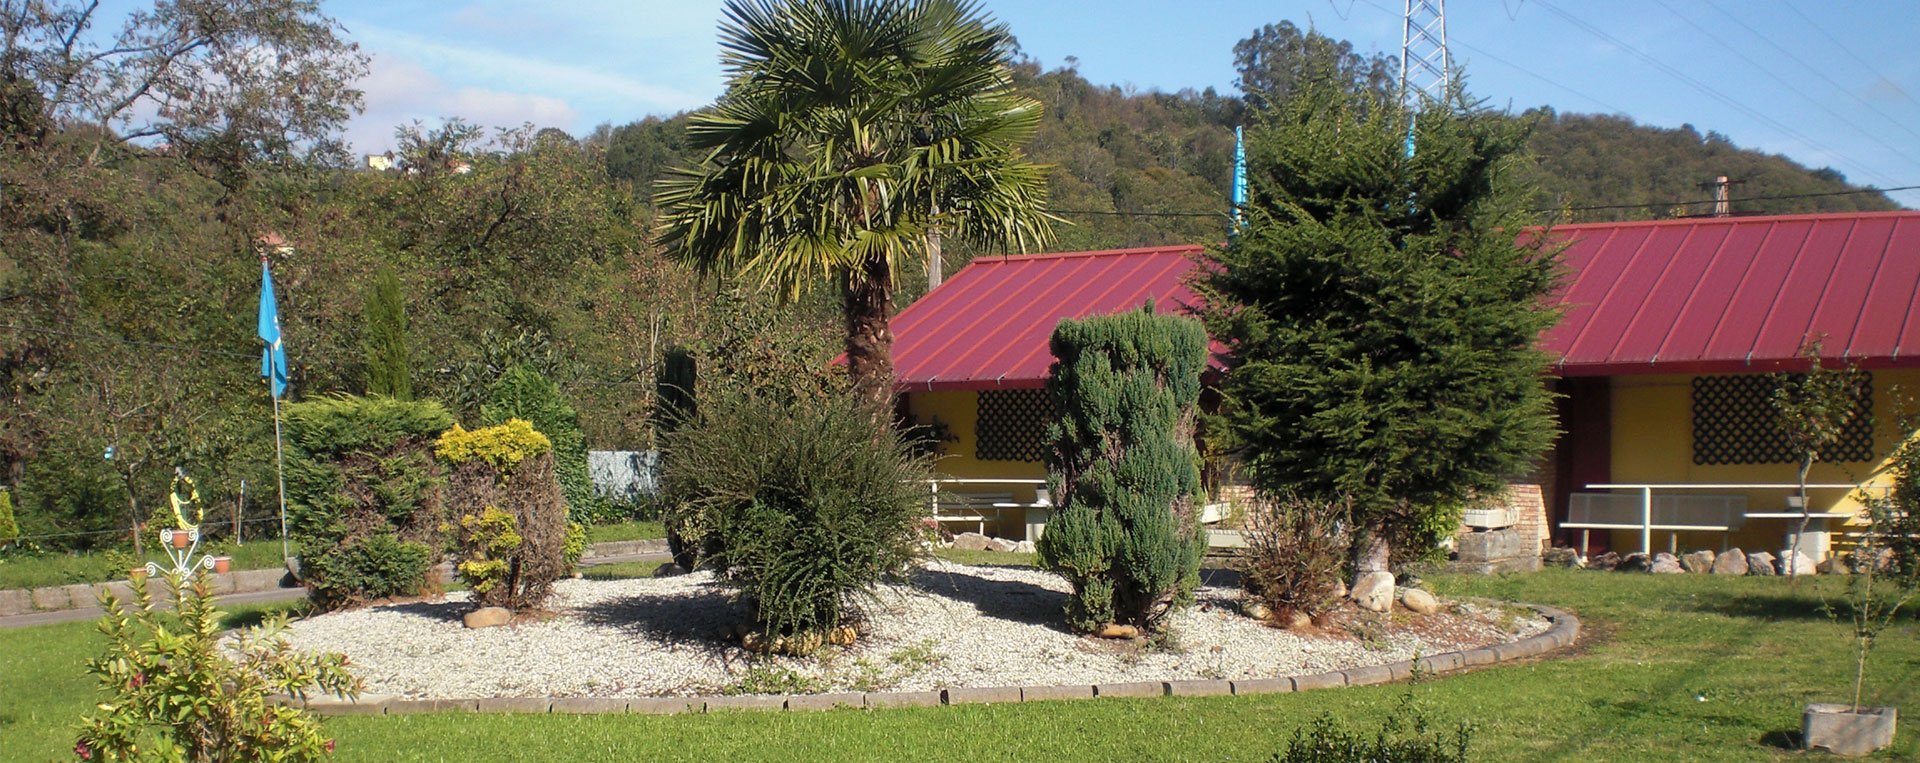 Jardín Residencia ancianos Tuilla en Asturias